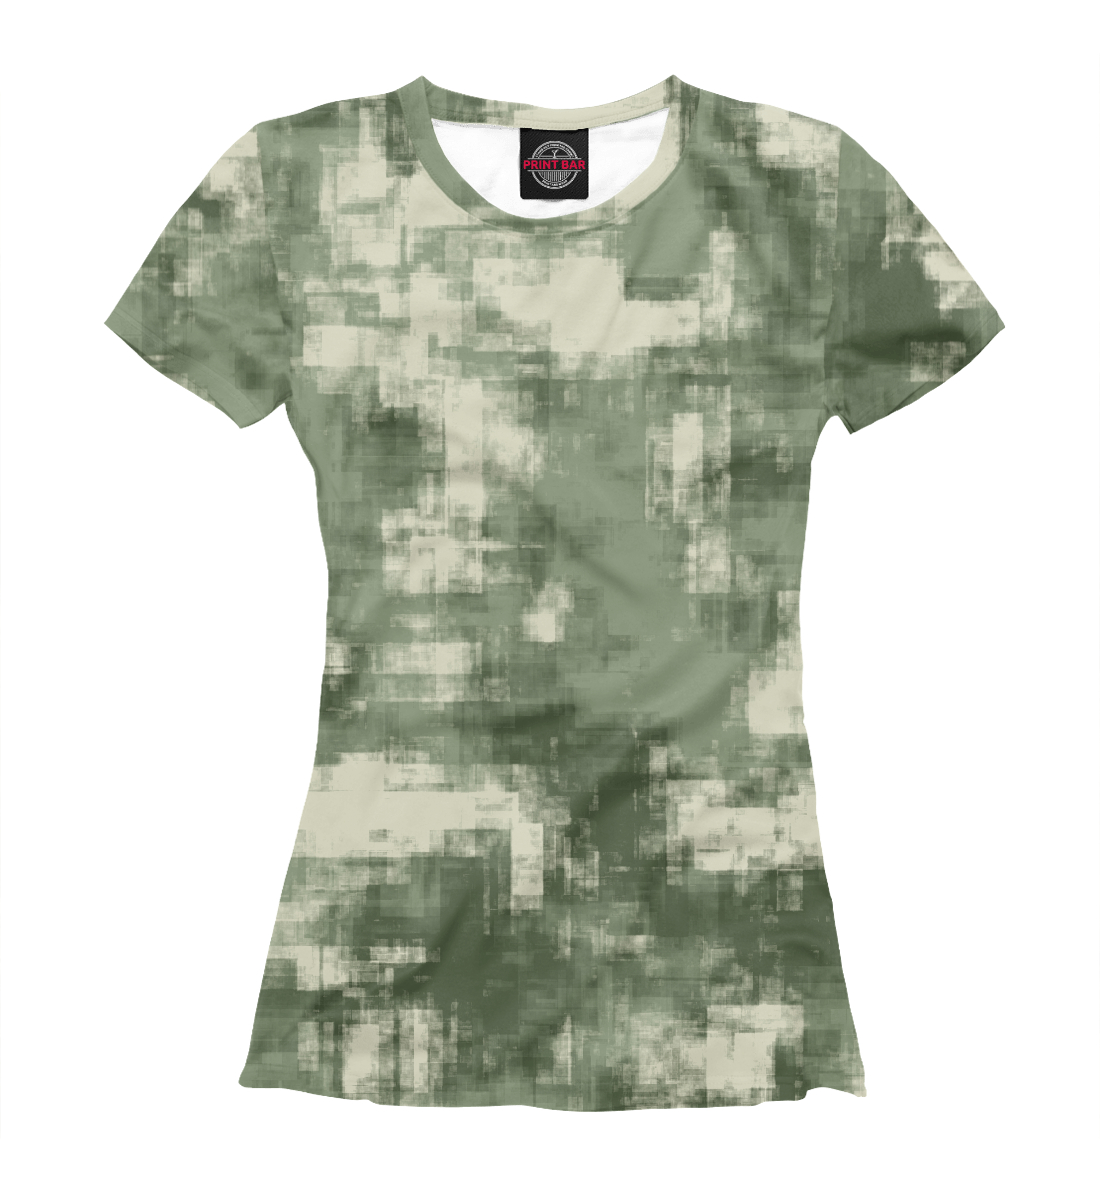 Женская Футболка Военный камуфляж- одежда для мужчин и женщин, артикул CMF-442561-fut-1mp